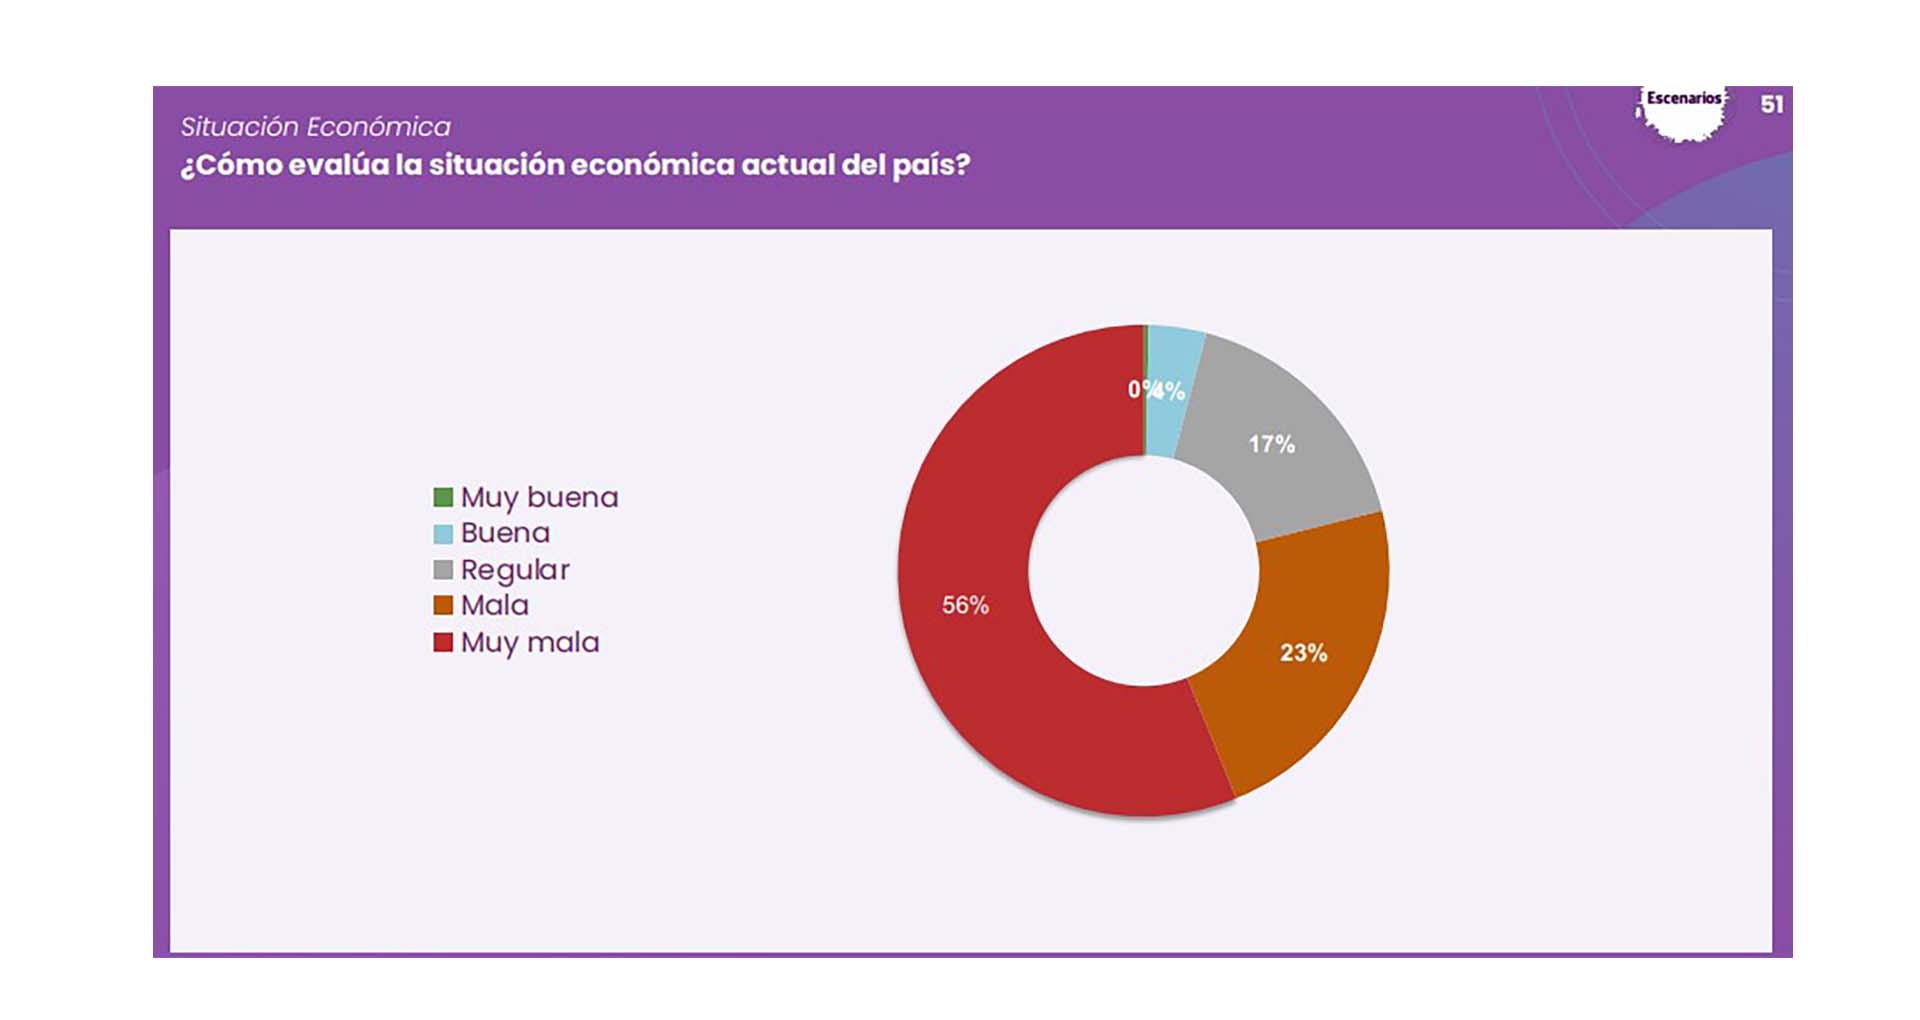 El 56% de los encuestados dice que la situación económica actual del país es “Muy mala”.